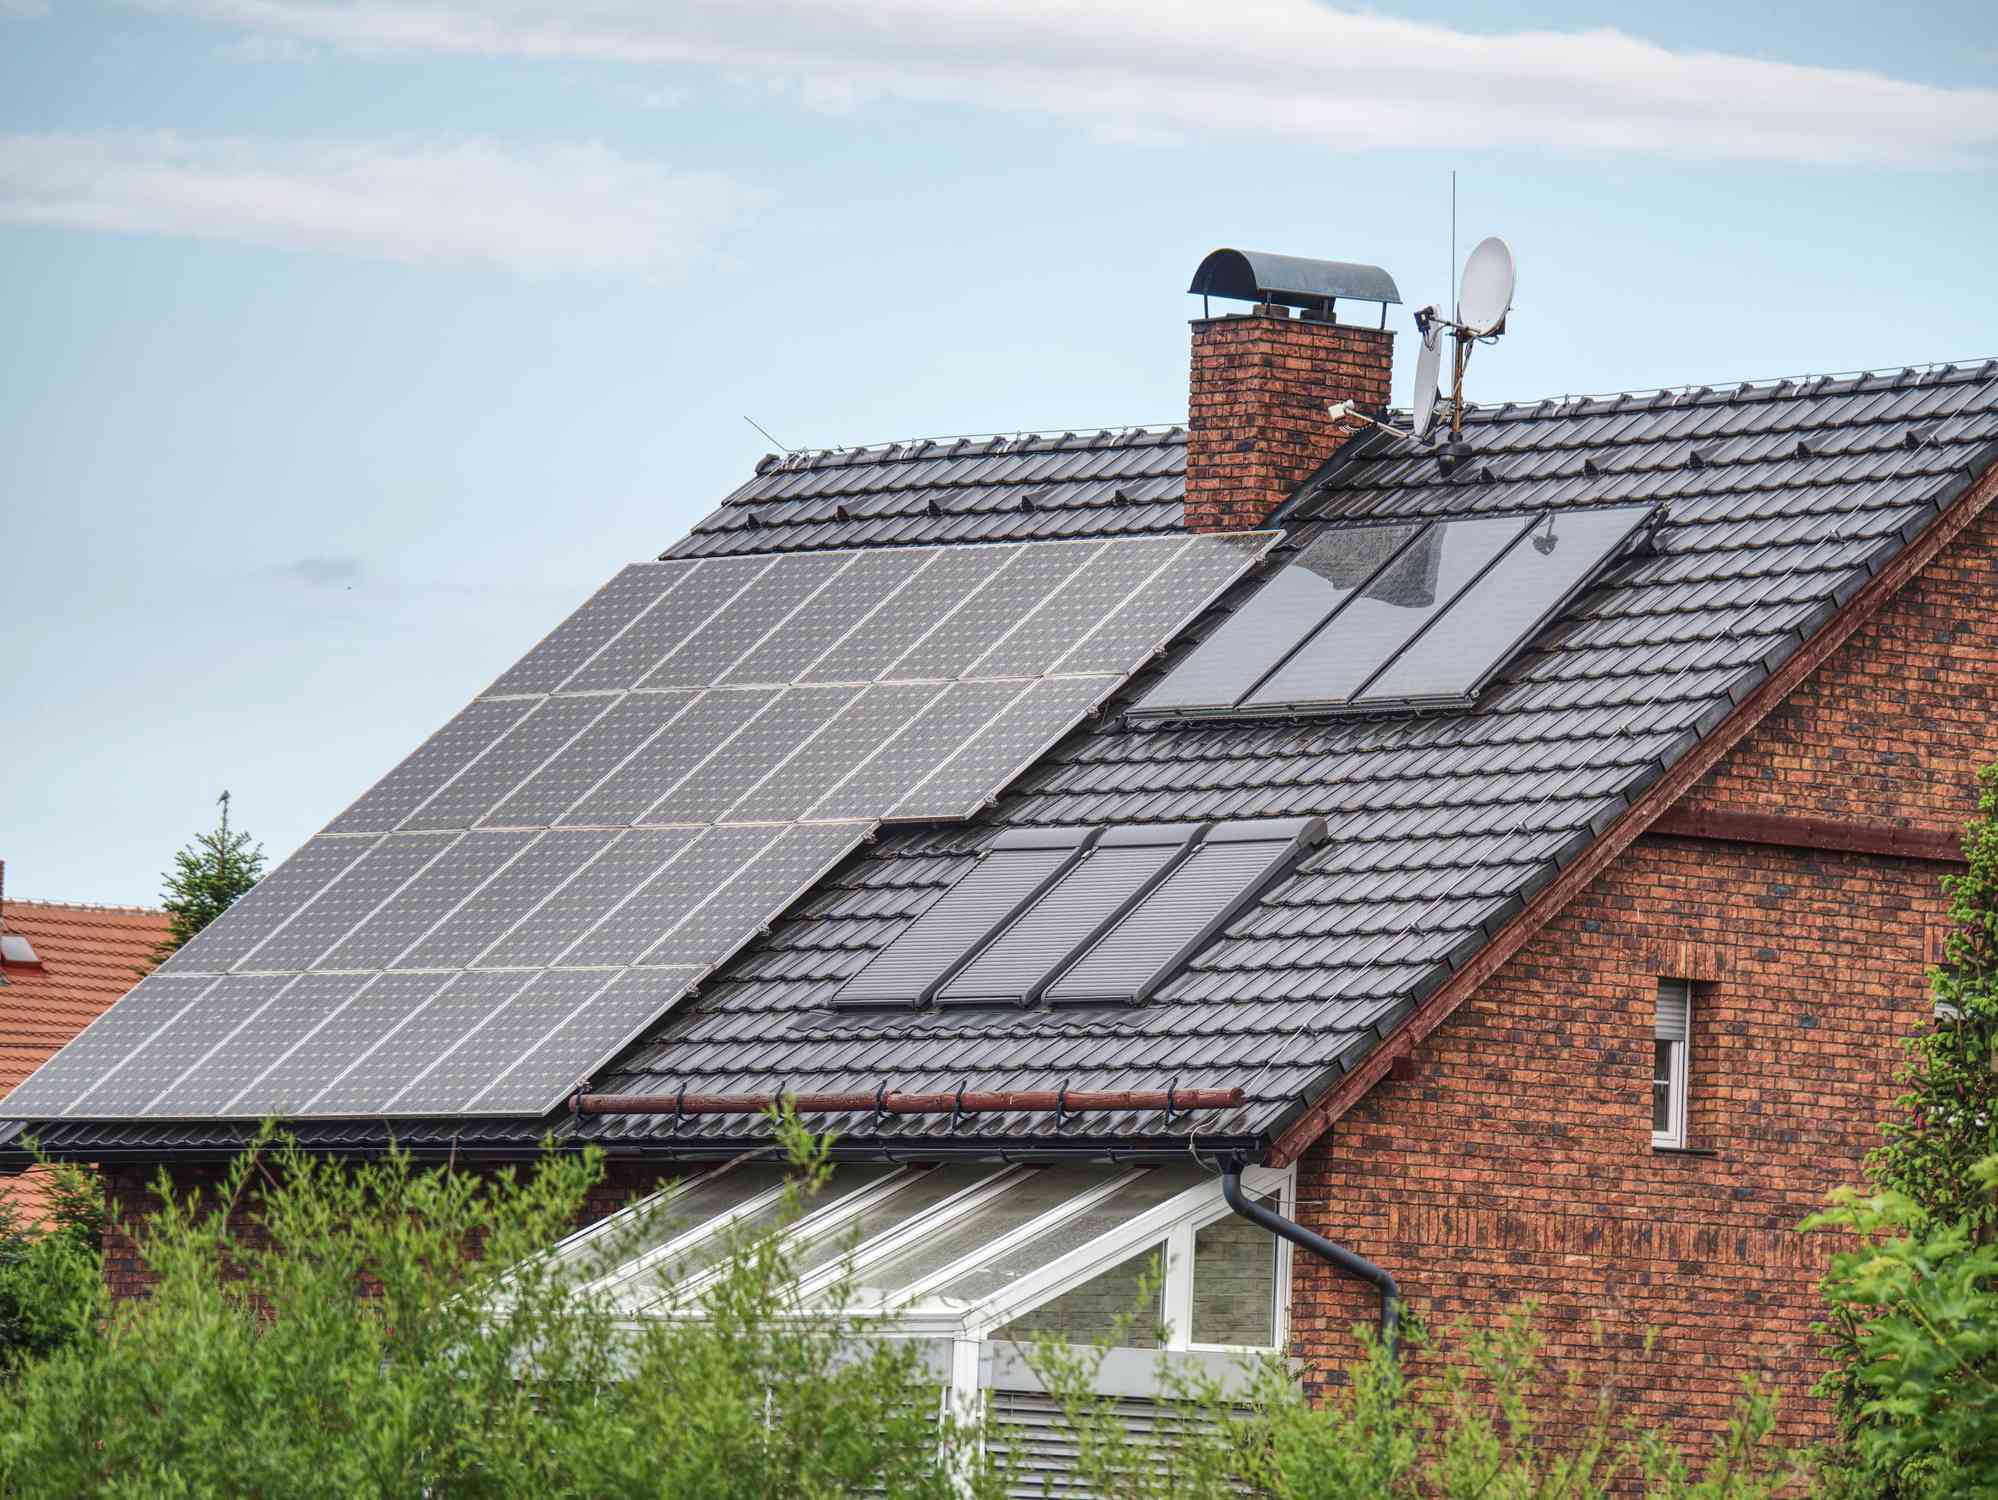 Paneles solares en el tejado de una casa de ladrillo